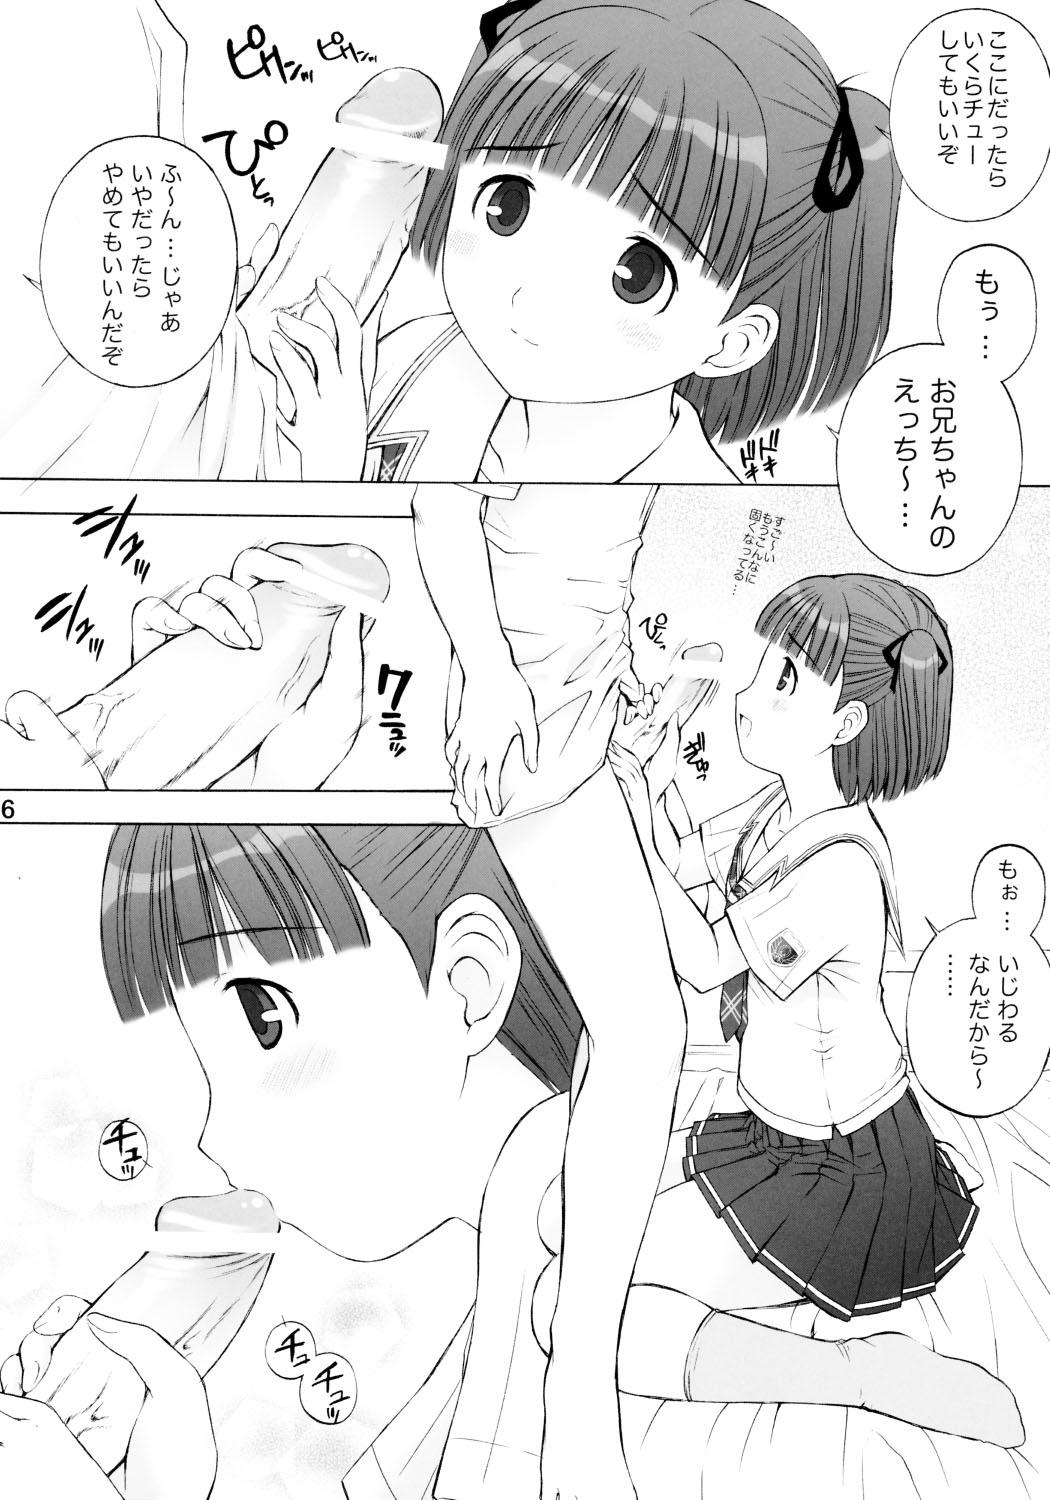 Chaturbate KISS 3 Kiss no Sanjou - Kimikiss Japanese - Page 5